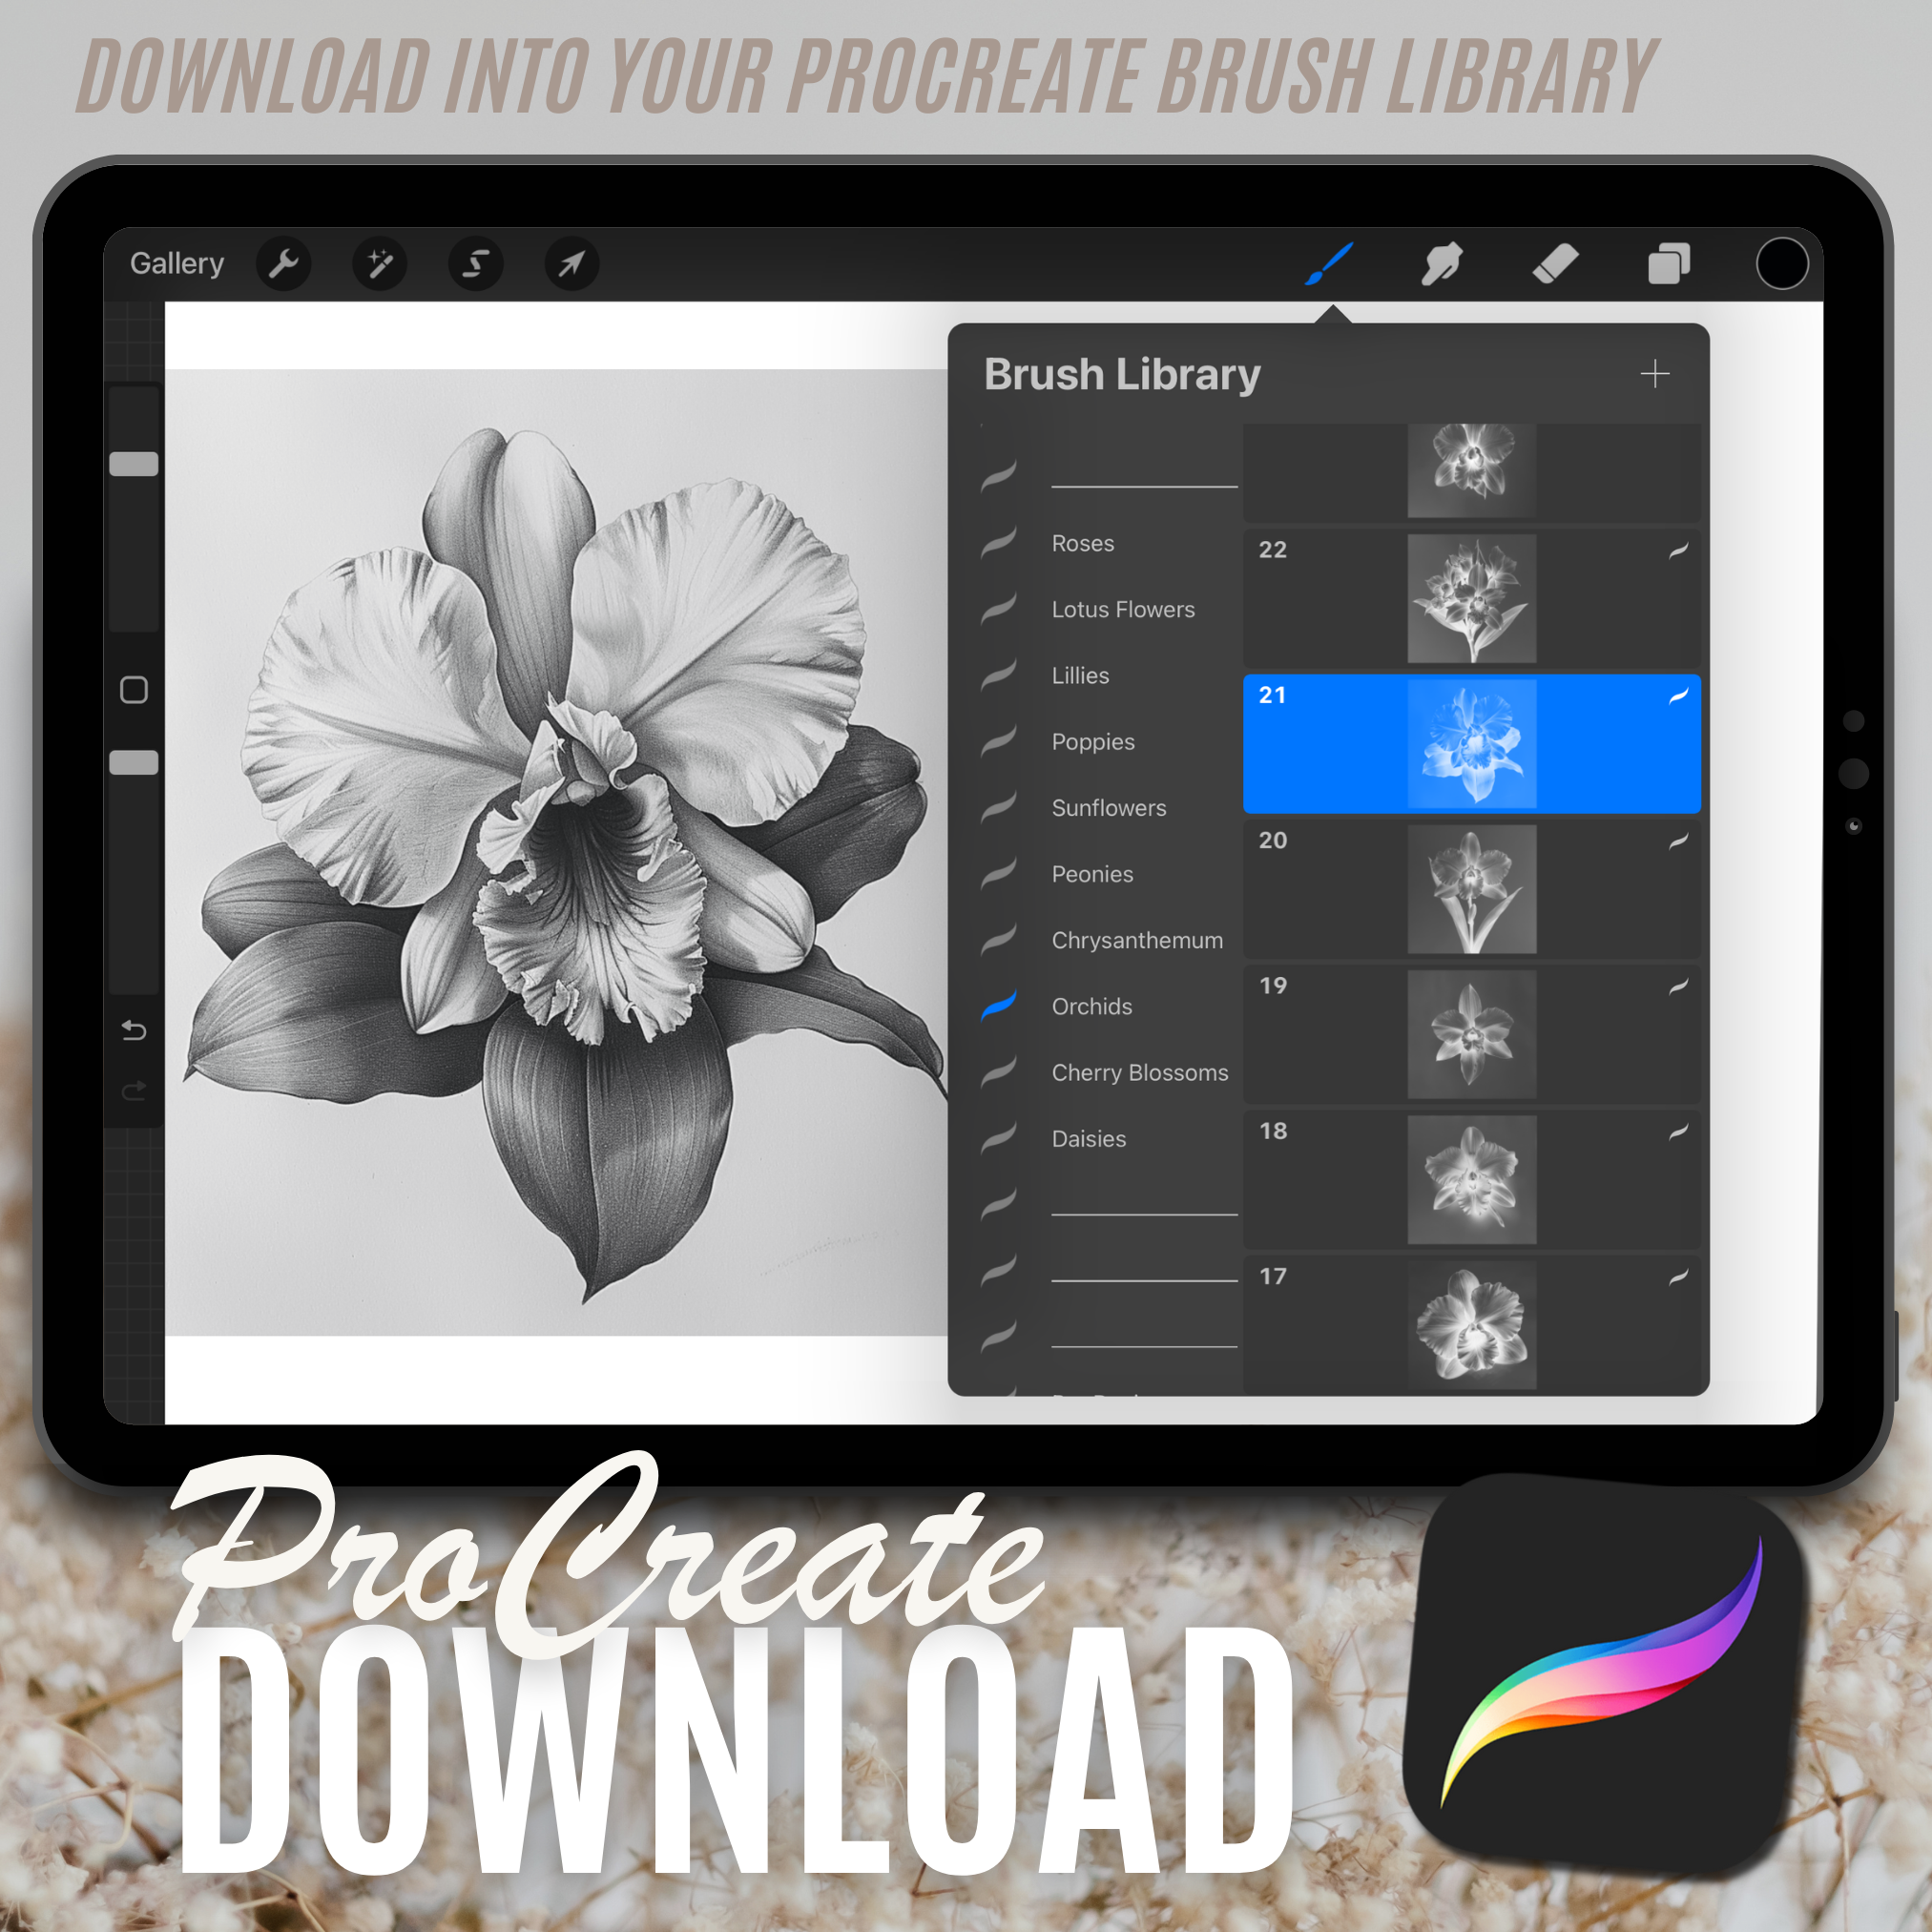 Digitale Designsammlung „Orchids“: 50 Procreate- und Skizzenbuchbilder